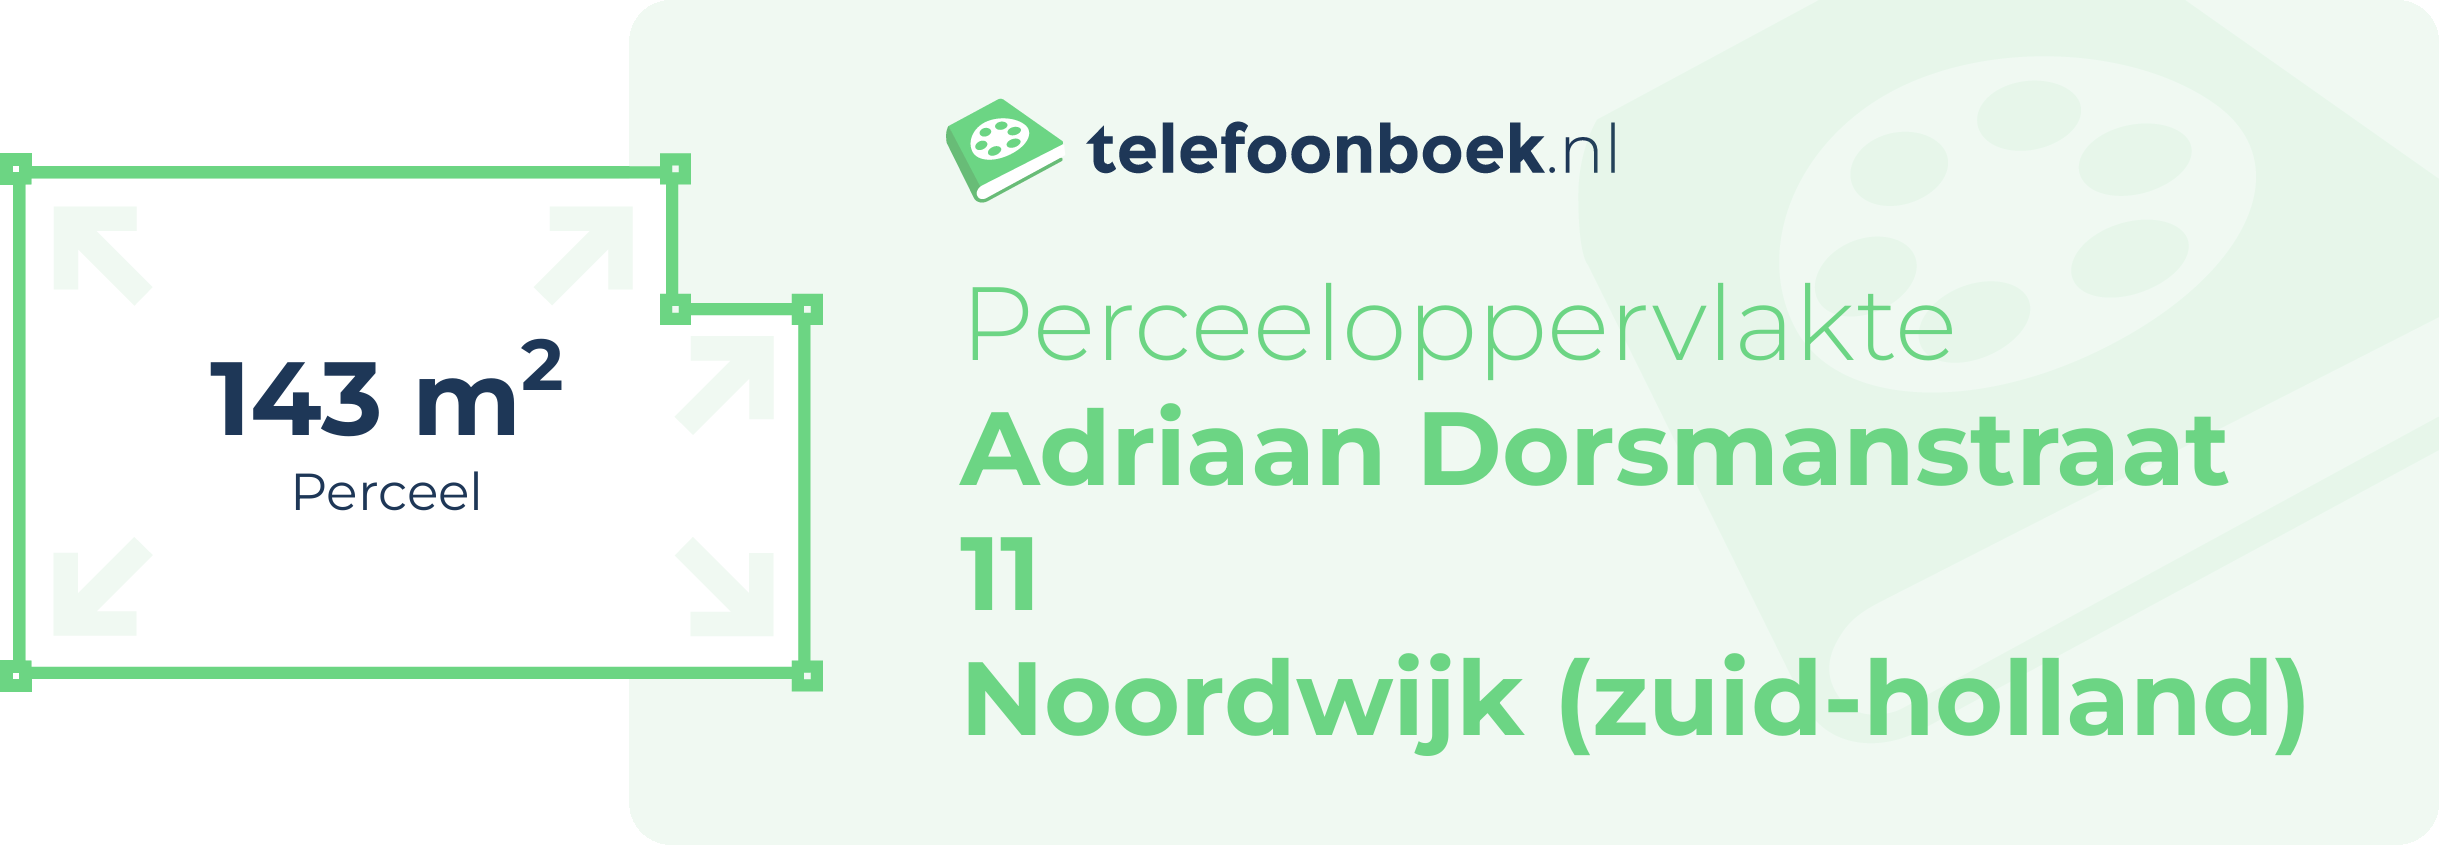 Perceeloppervlakte Adriaan Dorsmanstraat 11 Noordwijk (Zuid-Holland)